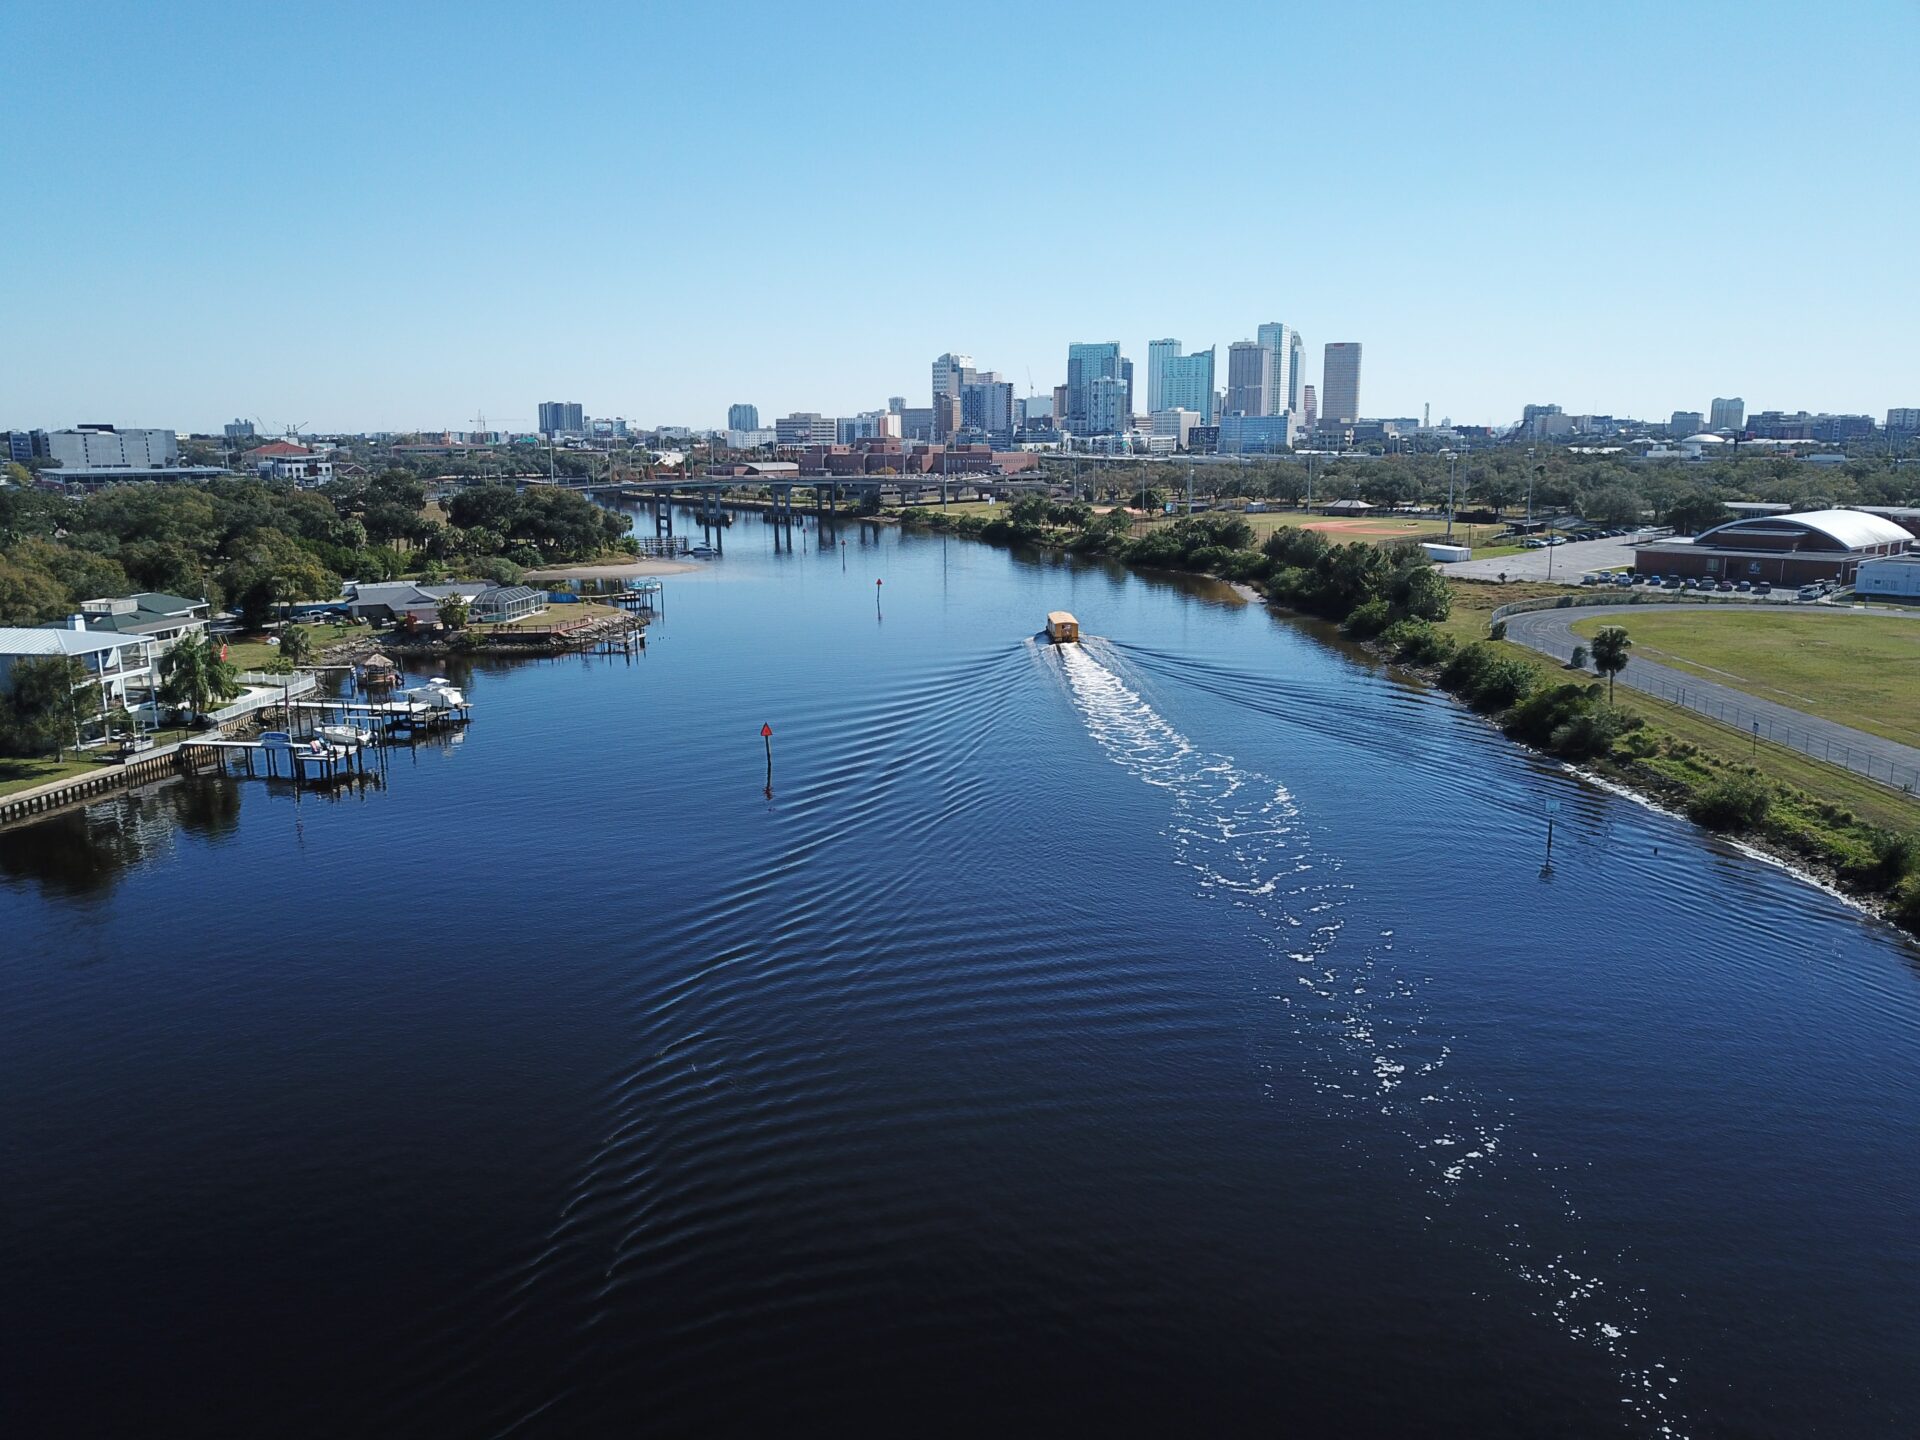 Tampa Hillsborough River